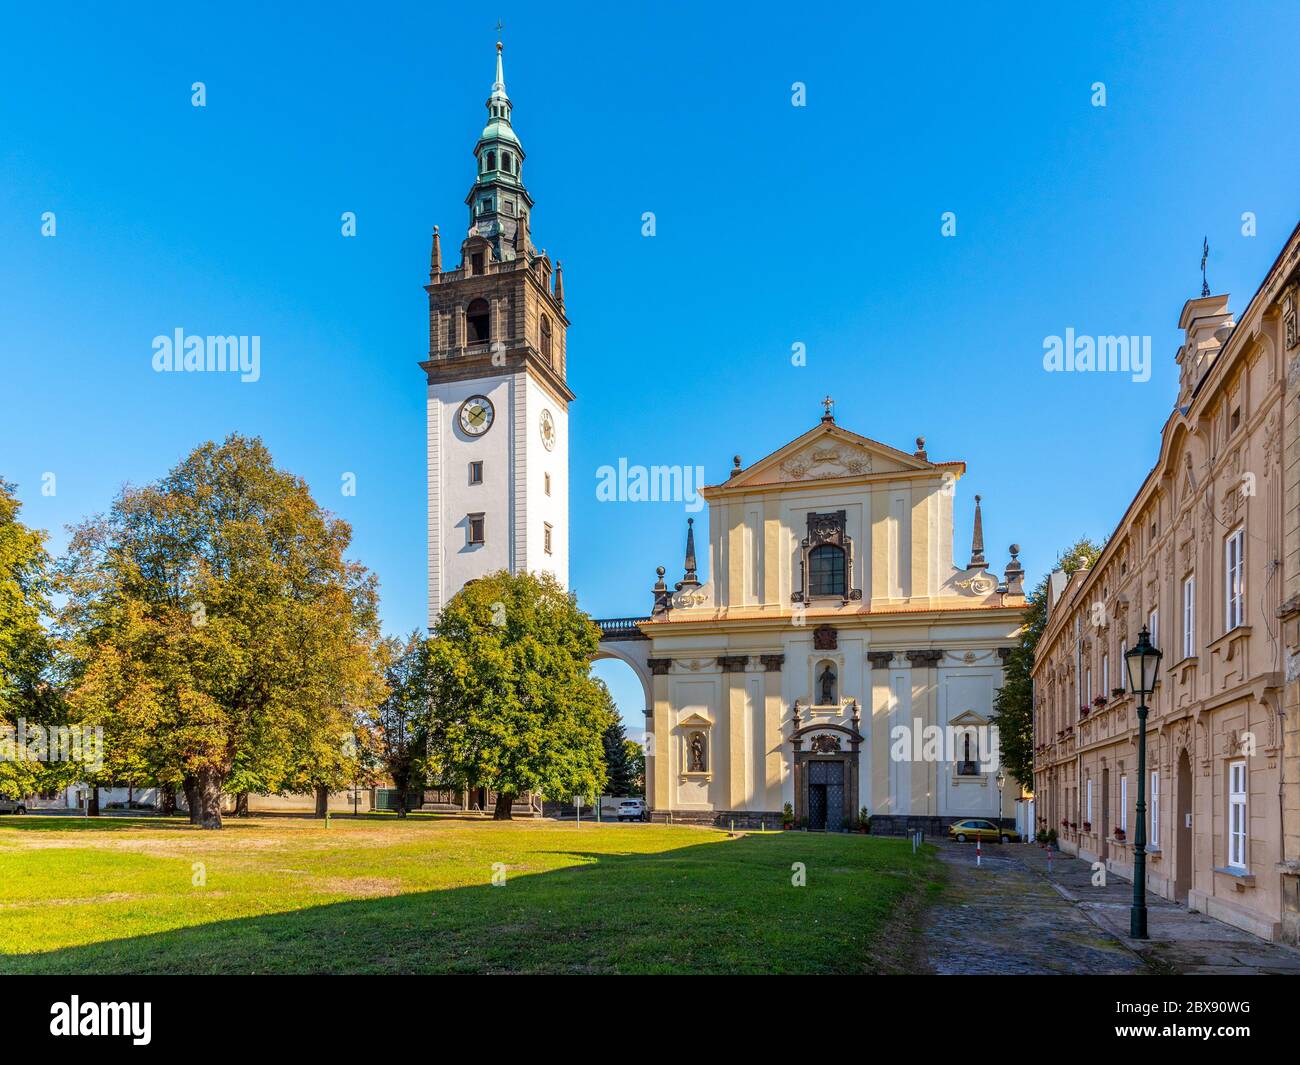 Cathédrale baroque Saint-Étienne avec clocher sur la place de la cathédrale à Litomerice, République tchèque. Banque D'Images